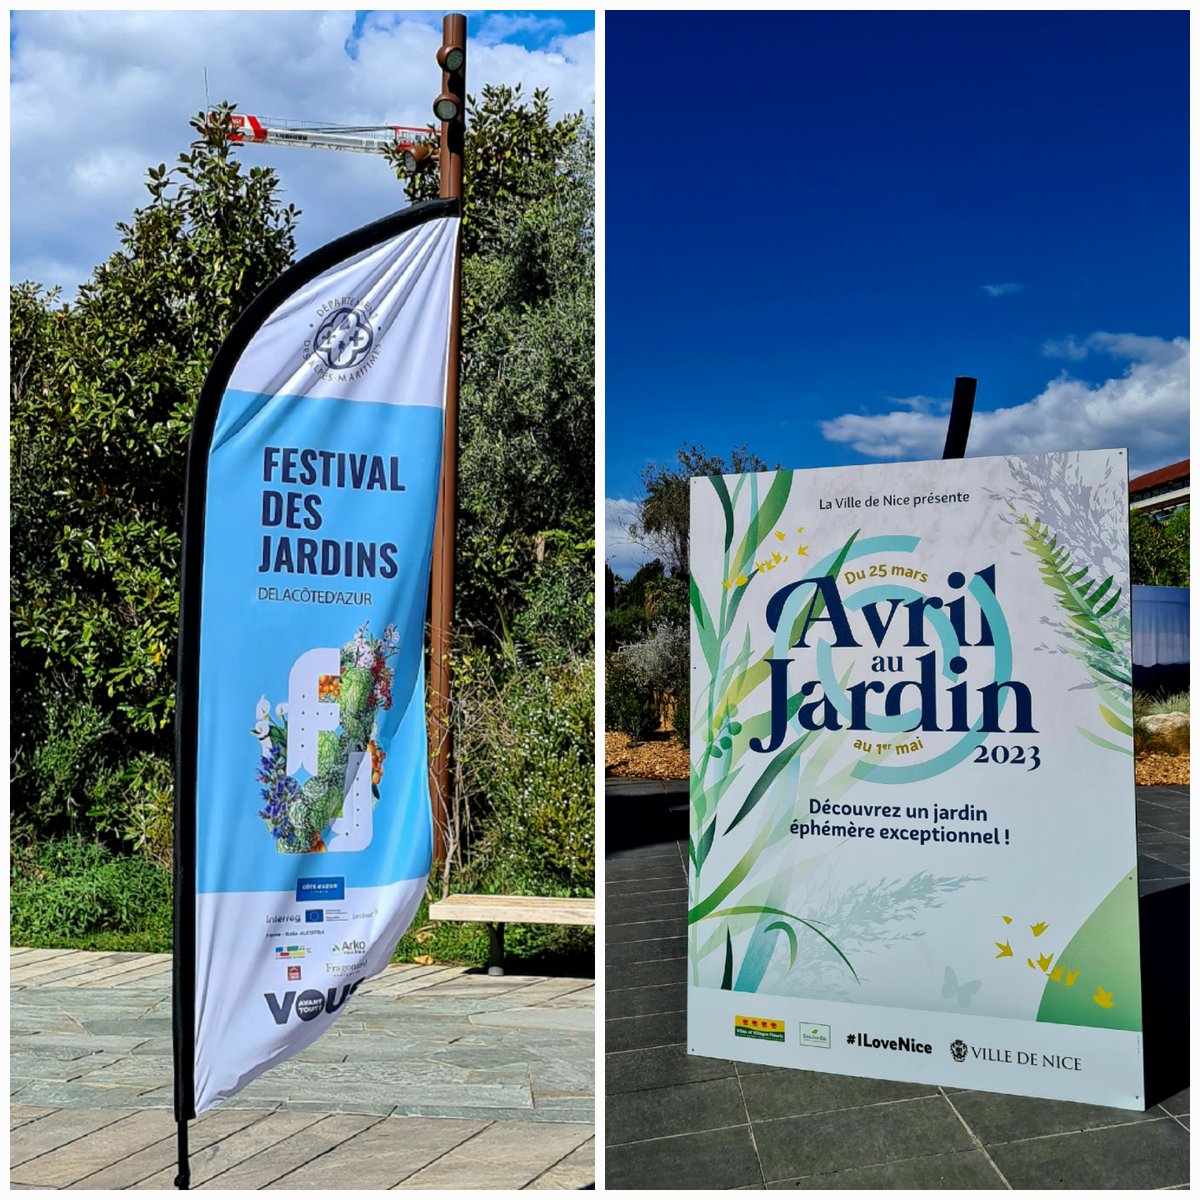 #FestivalDesJardins et #AvrilauJardin de @VilledeNice et @AlpesMaritimes dans les Jardins Albert 1er à Nice. 

2 coups de cœur : ' Entre là ' et ' Perspective d'avenir '.
1/3
#ExploreNiceCotedAzur 
#CotedAzurFrance